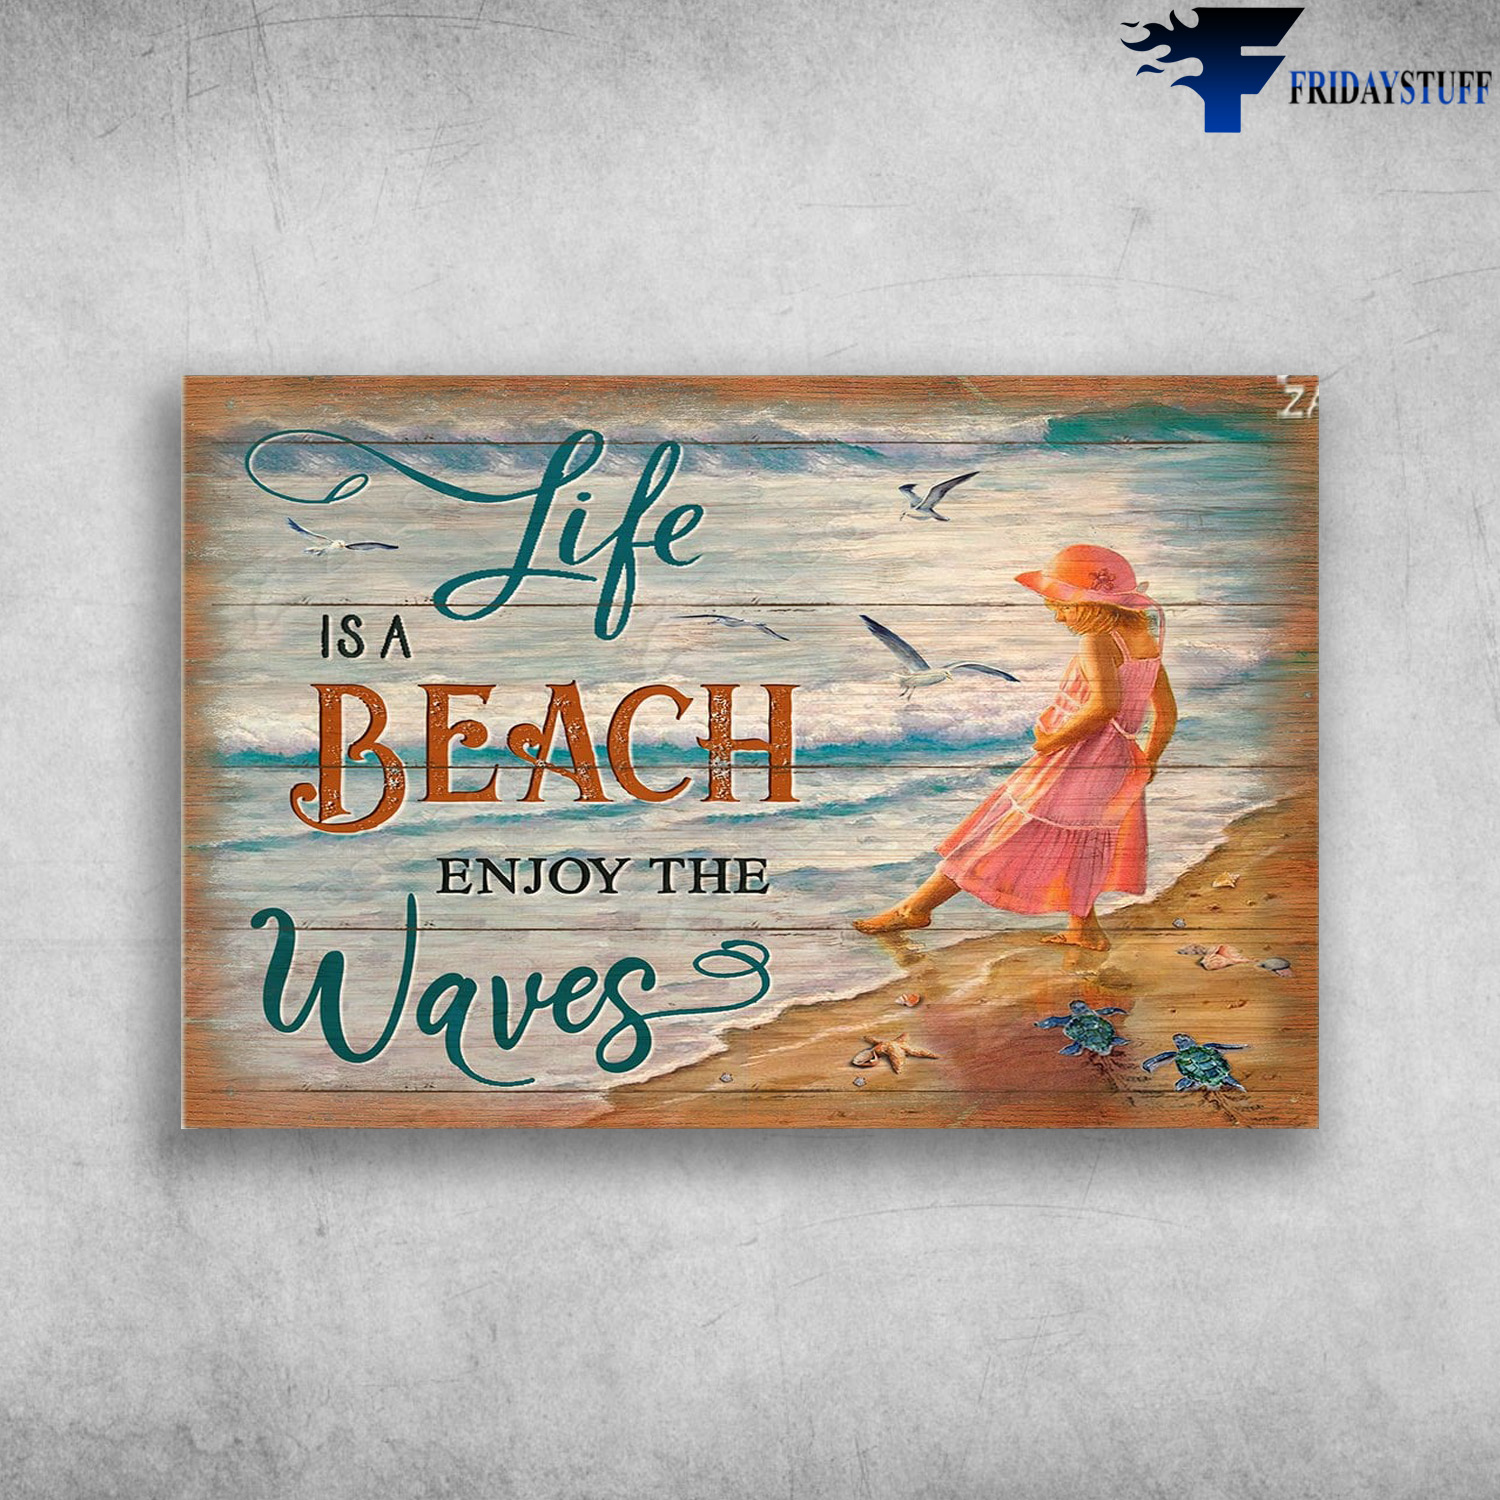 Little Girl On The Beach - Life Is A Beach Enjoy The Waves